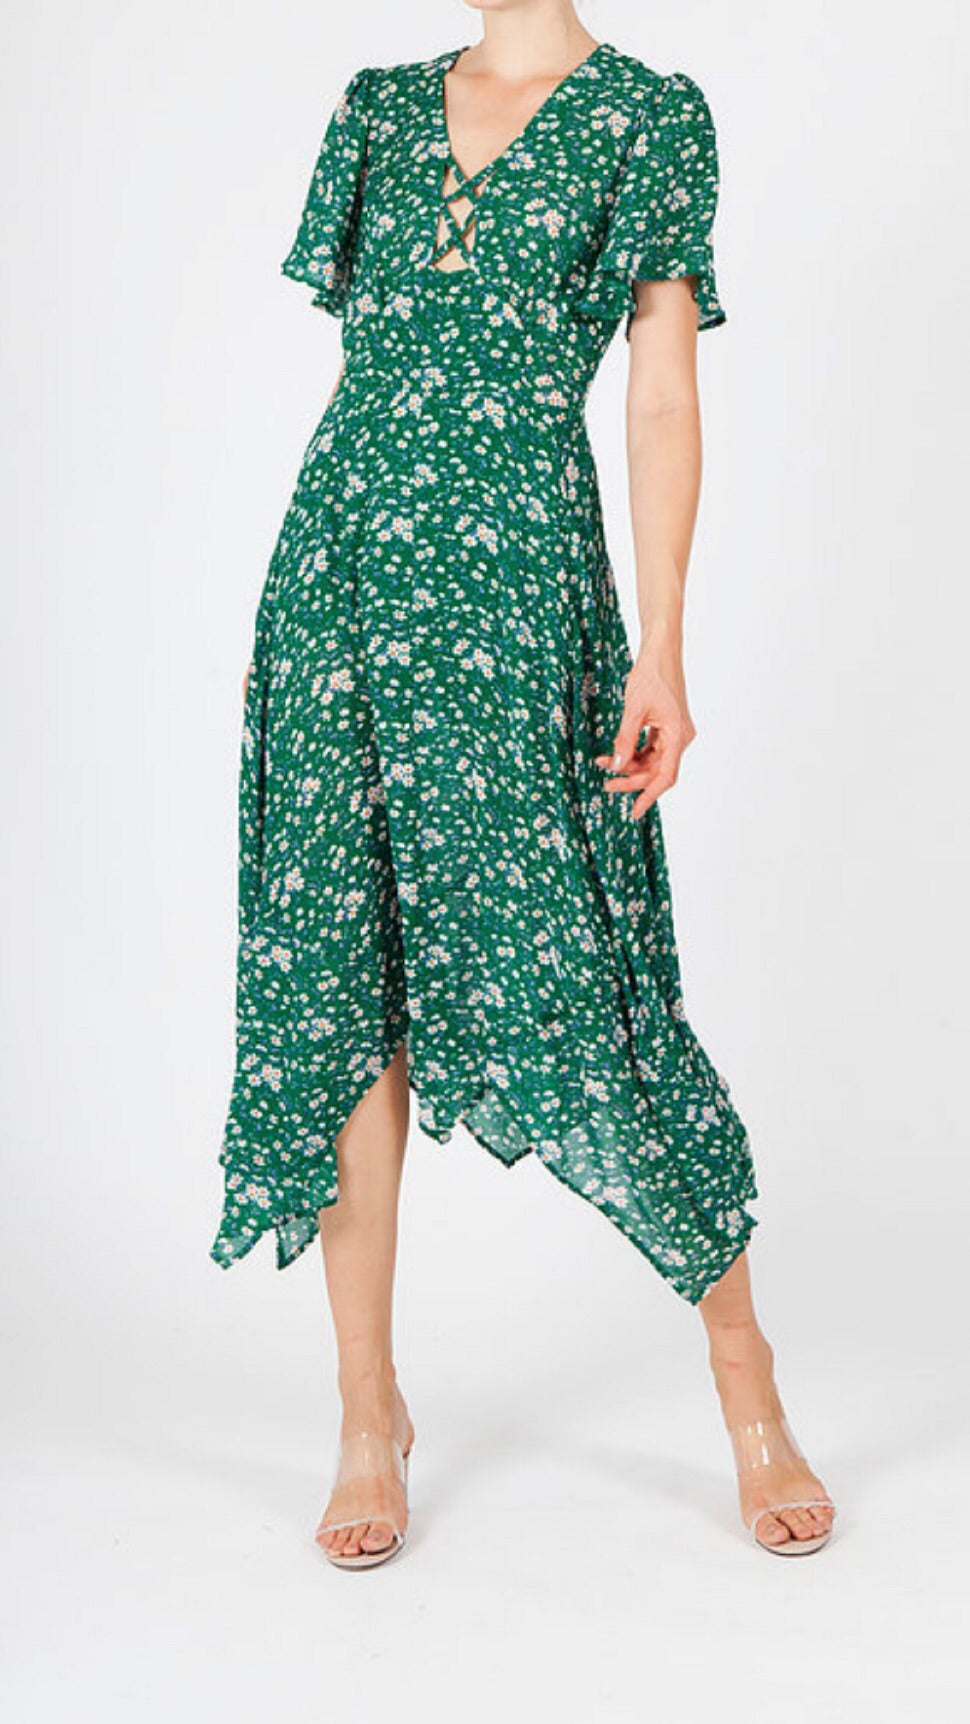 Jovonna Coleen Green Floral Dress